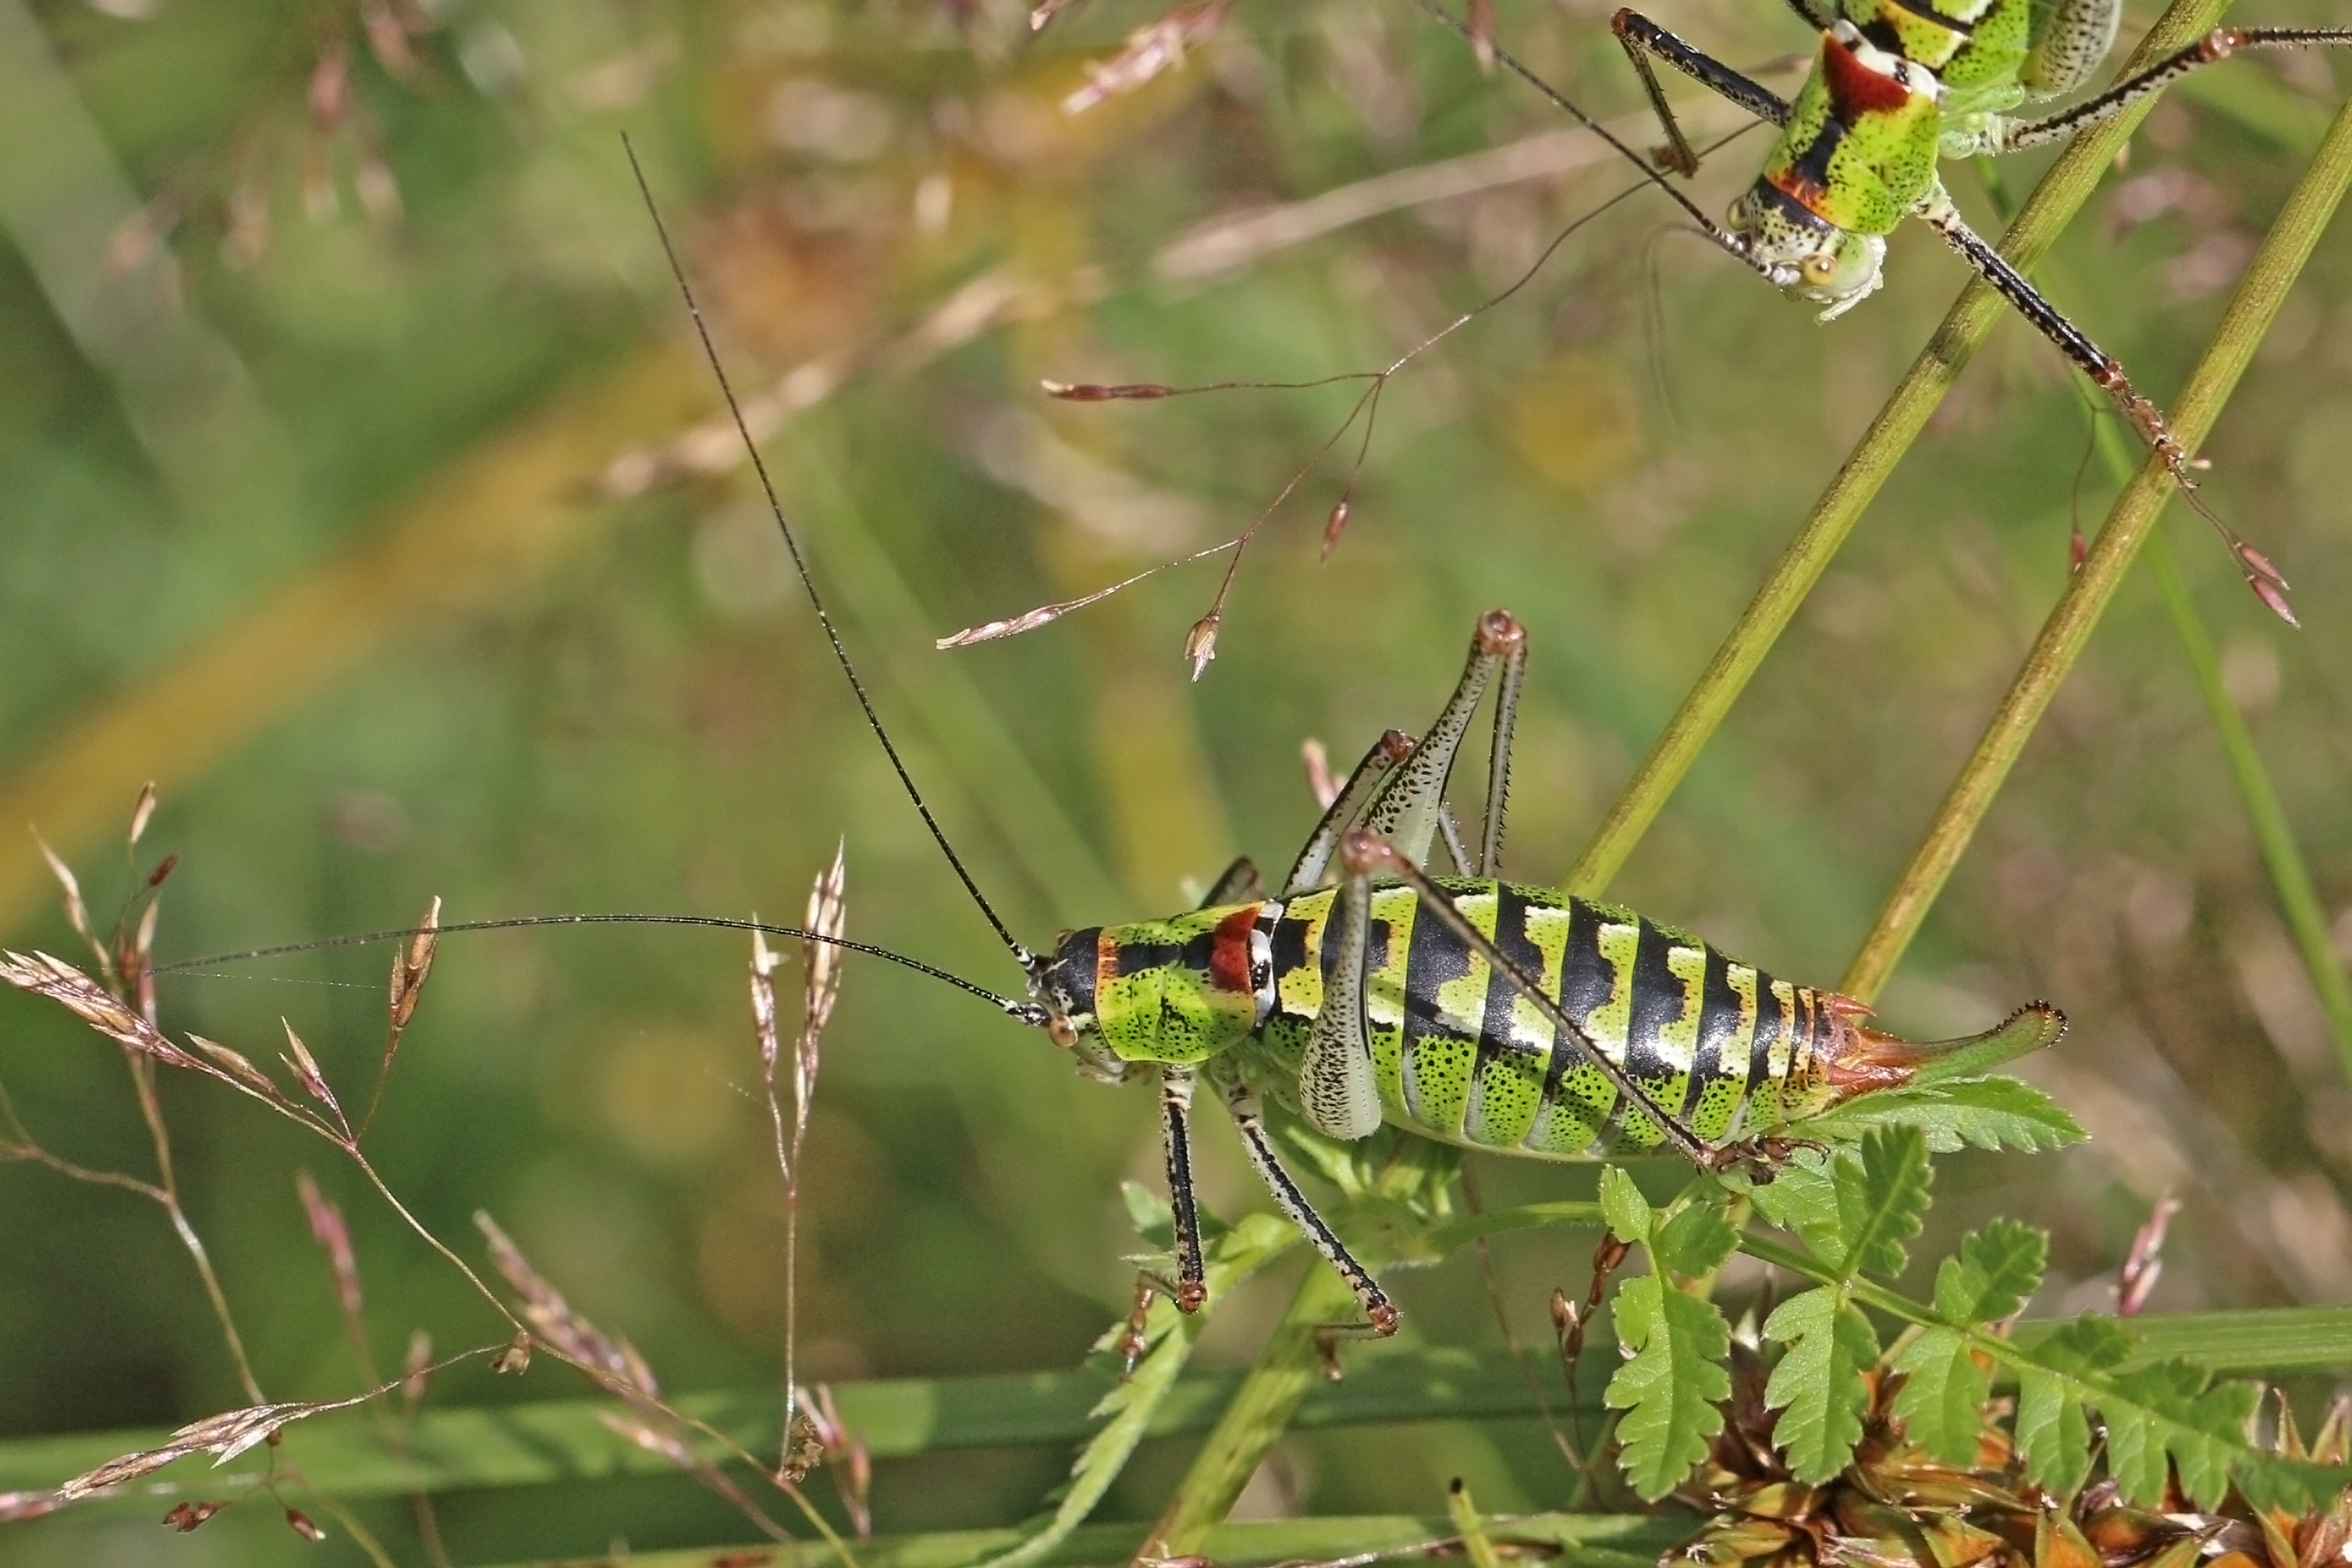 Bellied bright bush-cricket (Poecilimon thoracicus) female